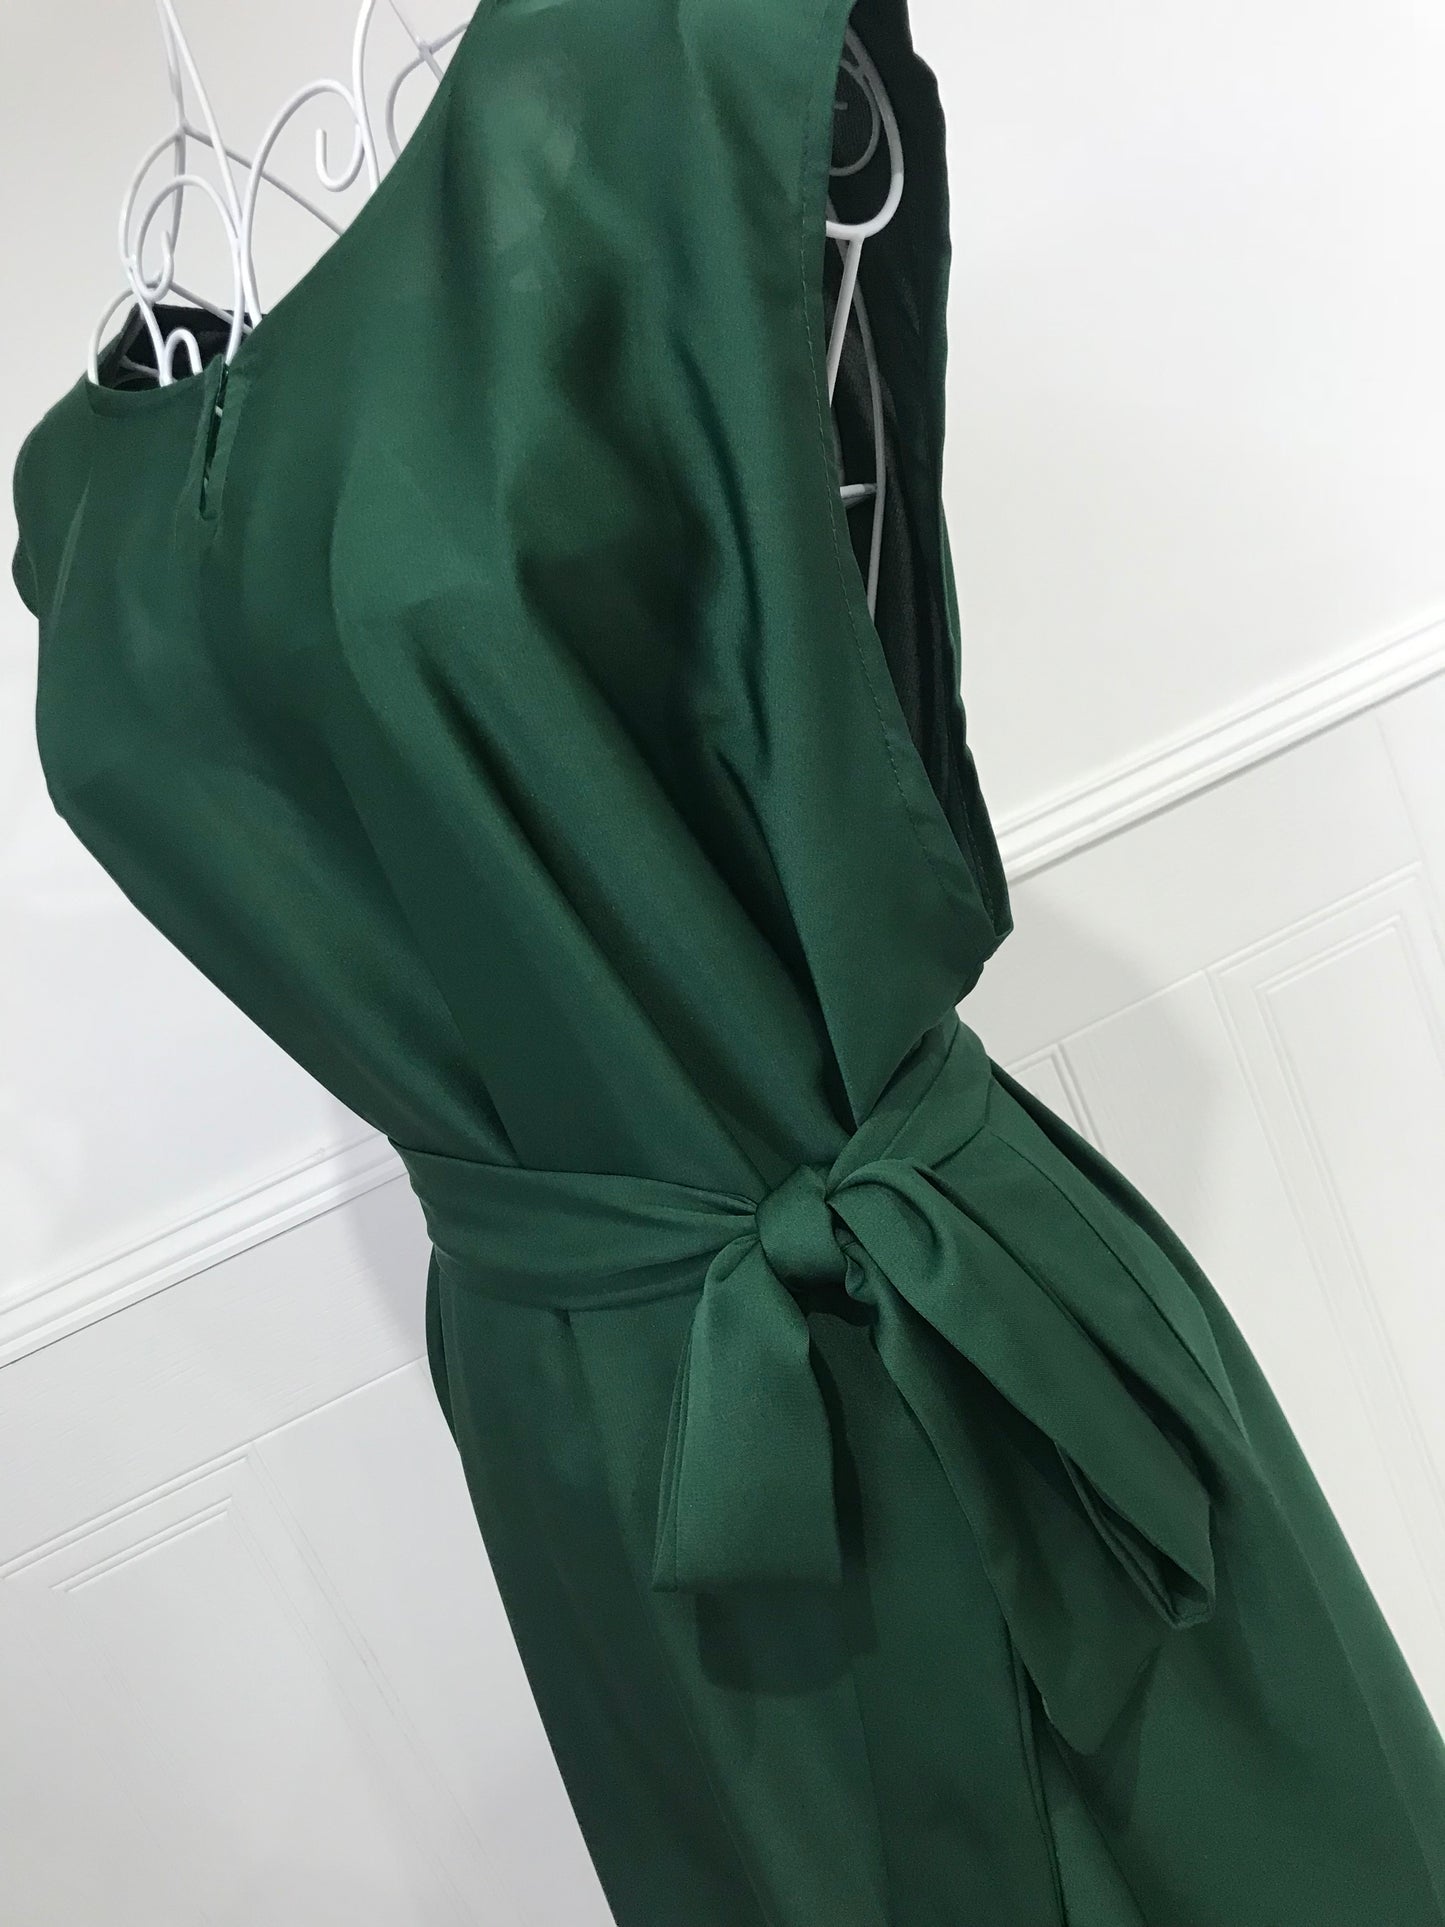 Aisha Inner sleeveless slip: Forest Green